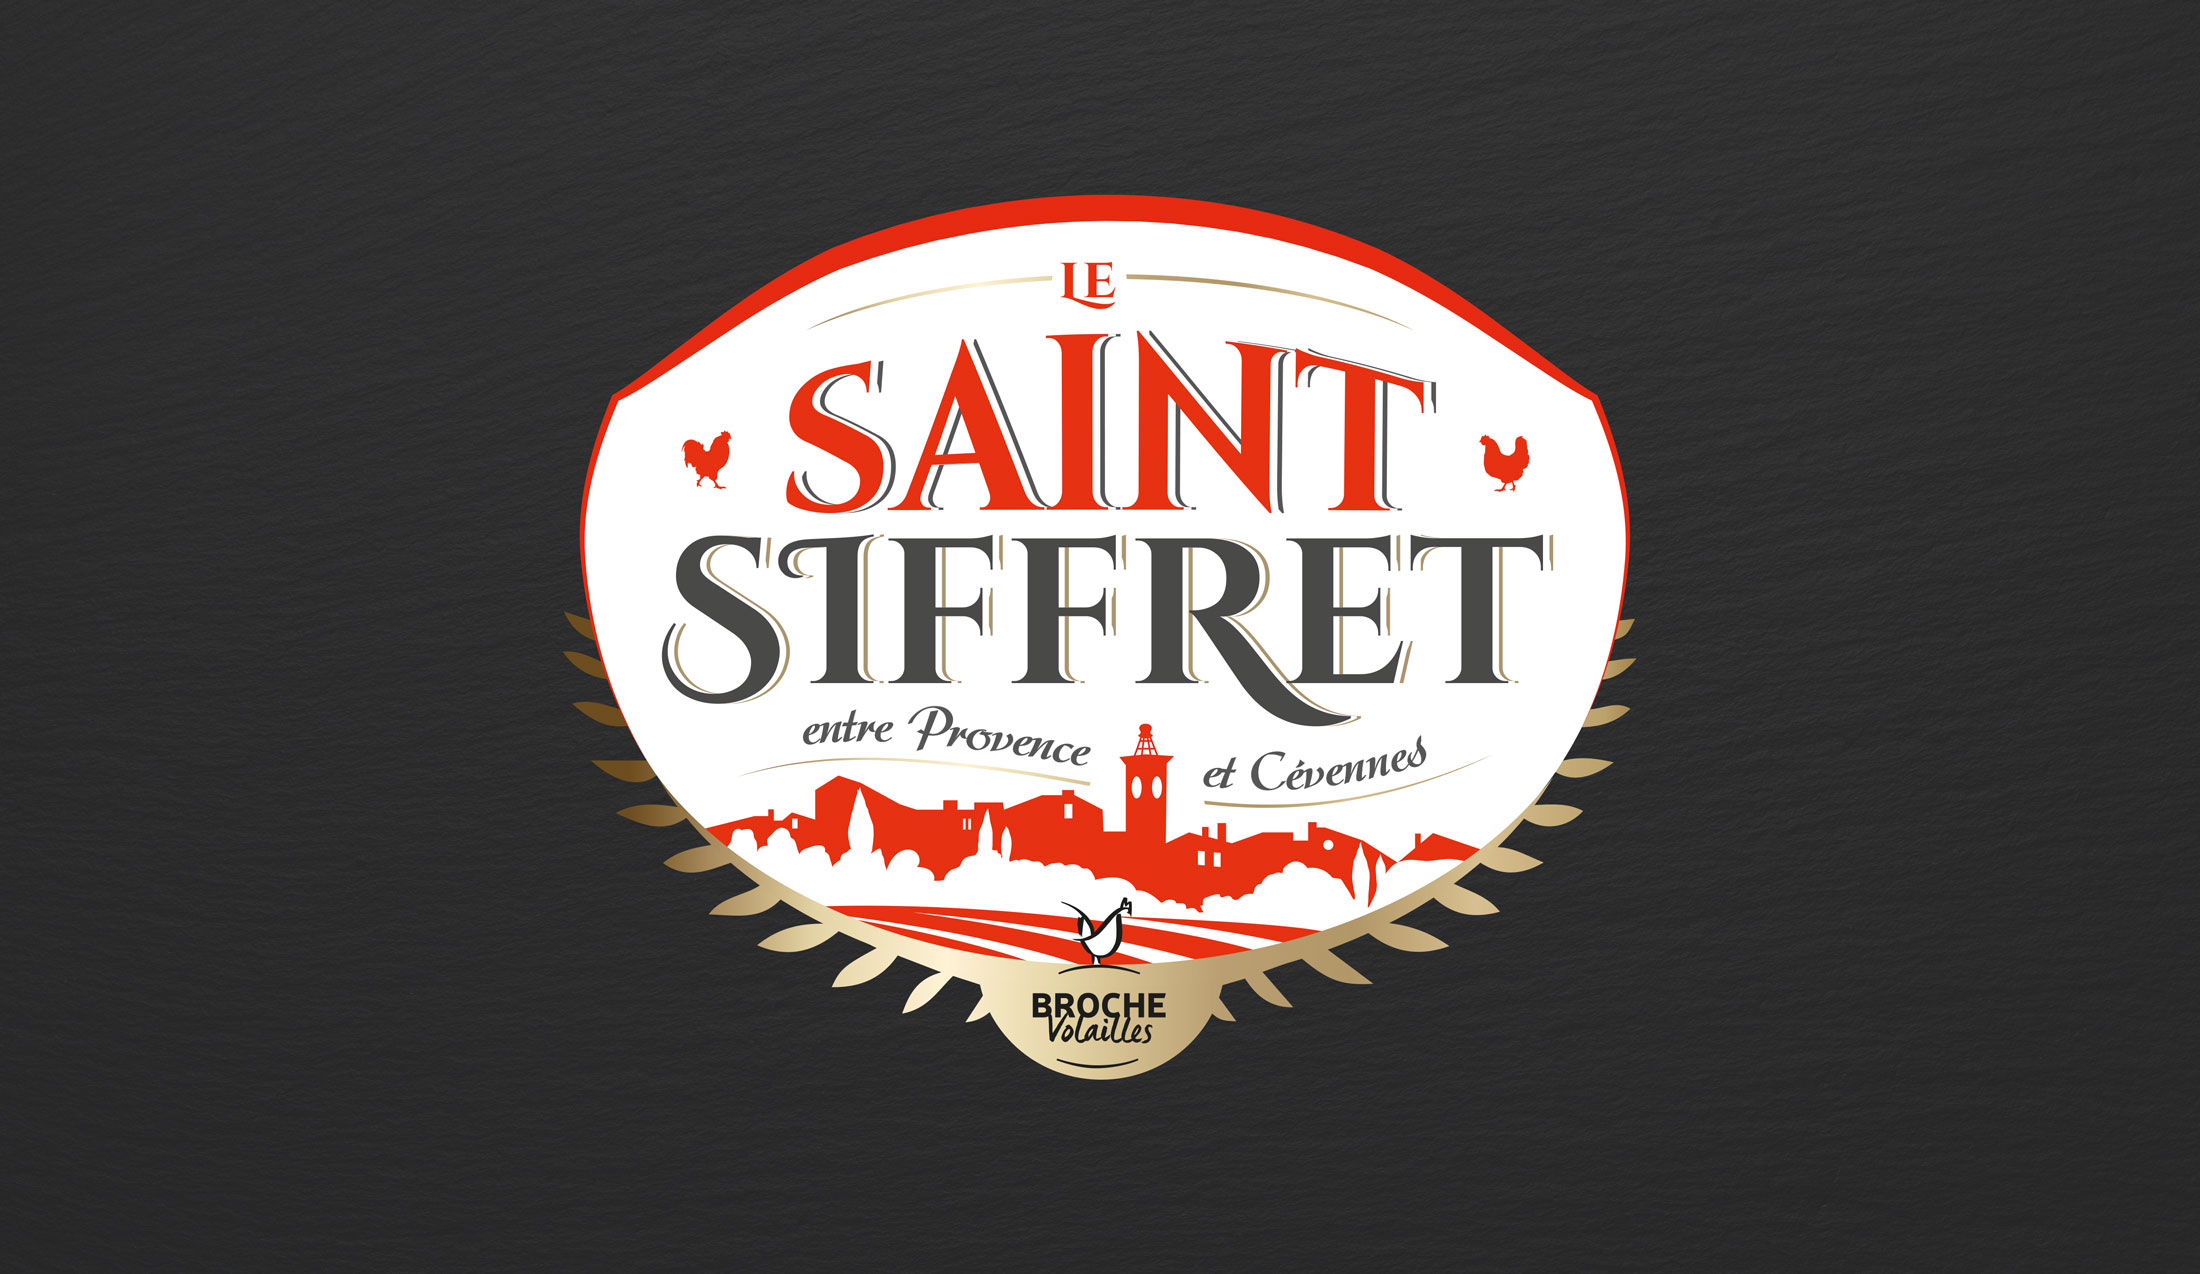 Le Saint Siffret logo